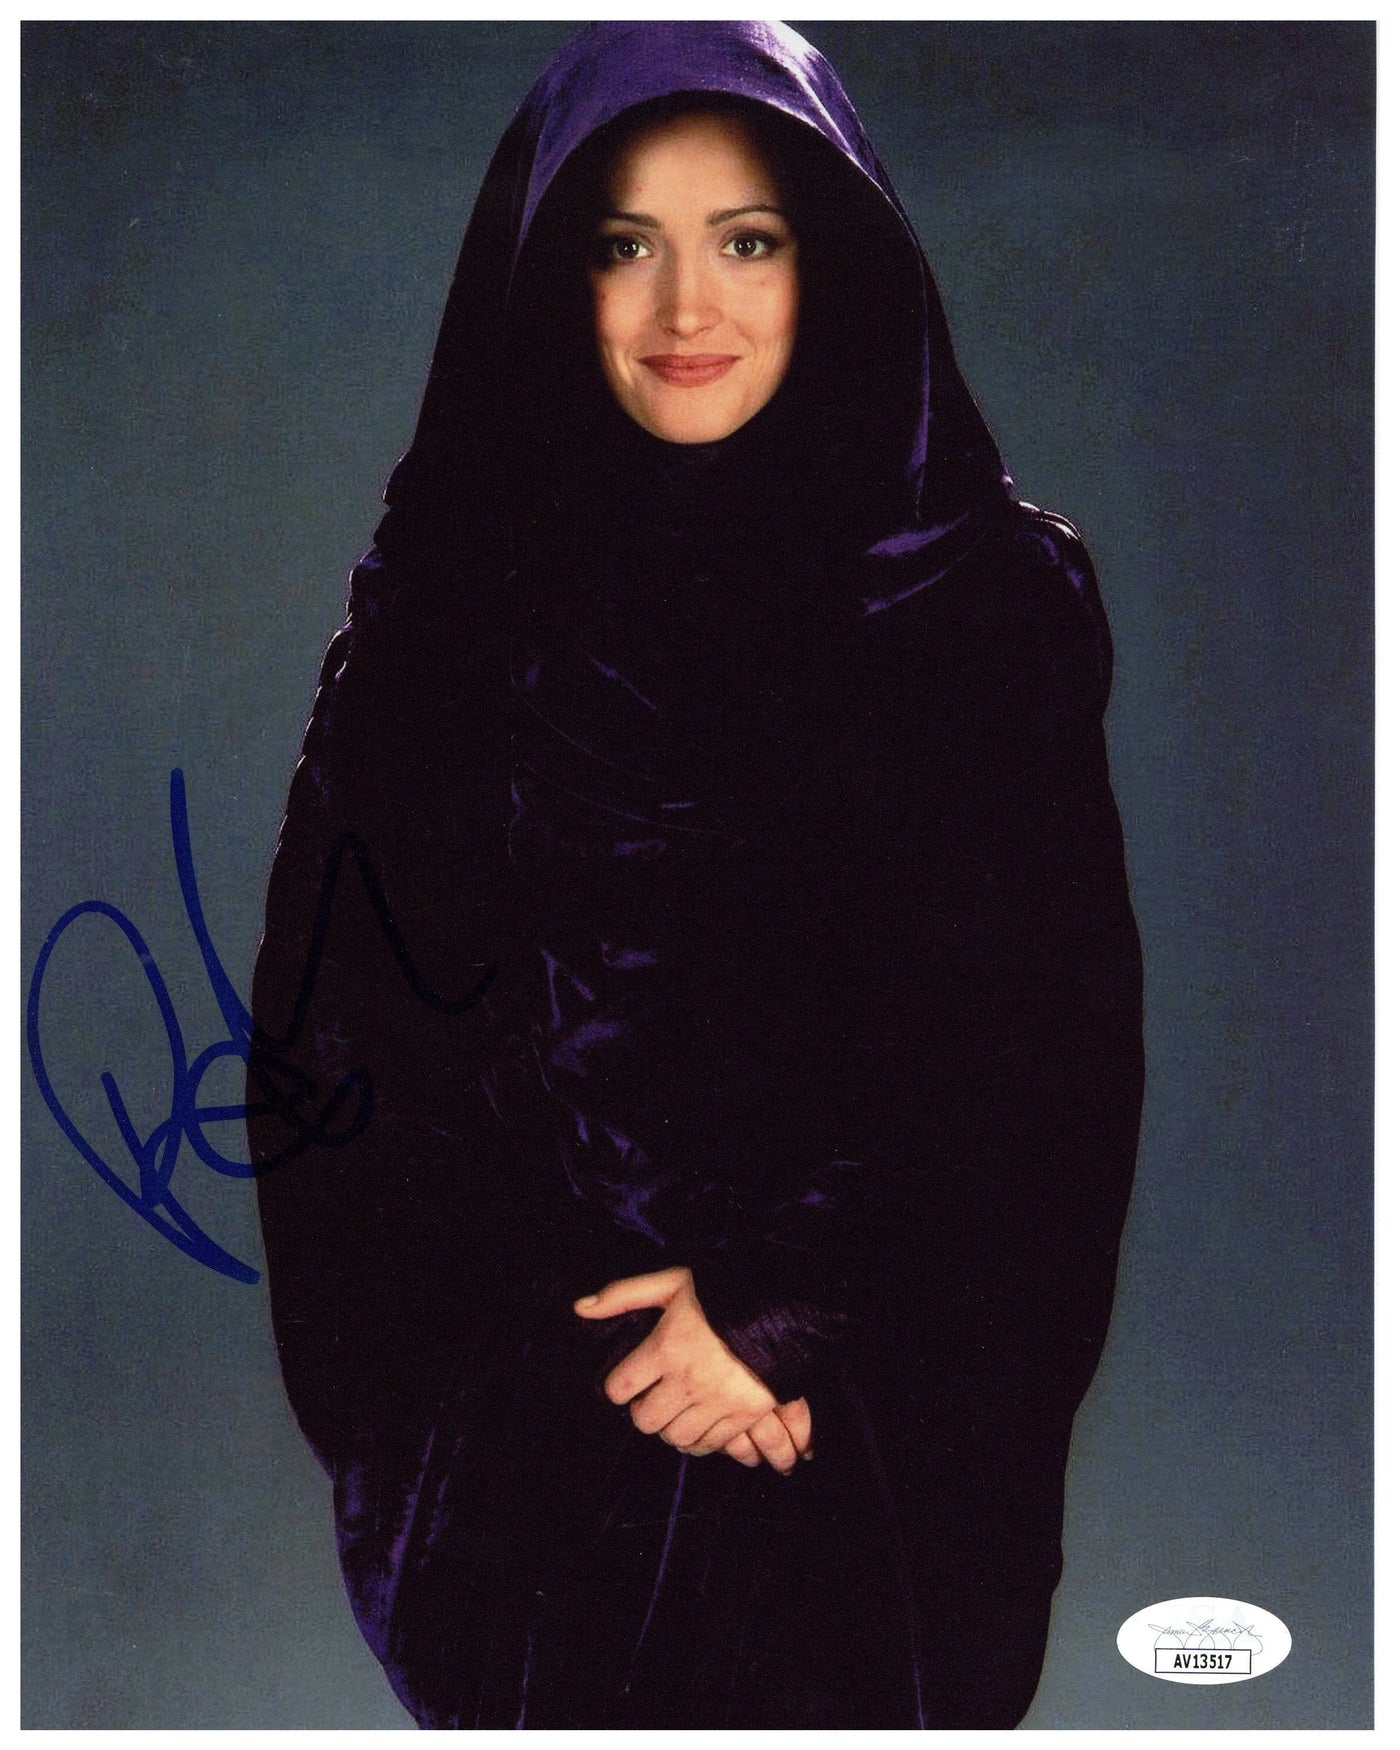 Rose Byrne Signed 8x10 Photo Star Wars Ep II Autographed JSA COA #2